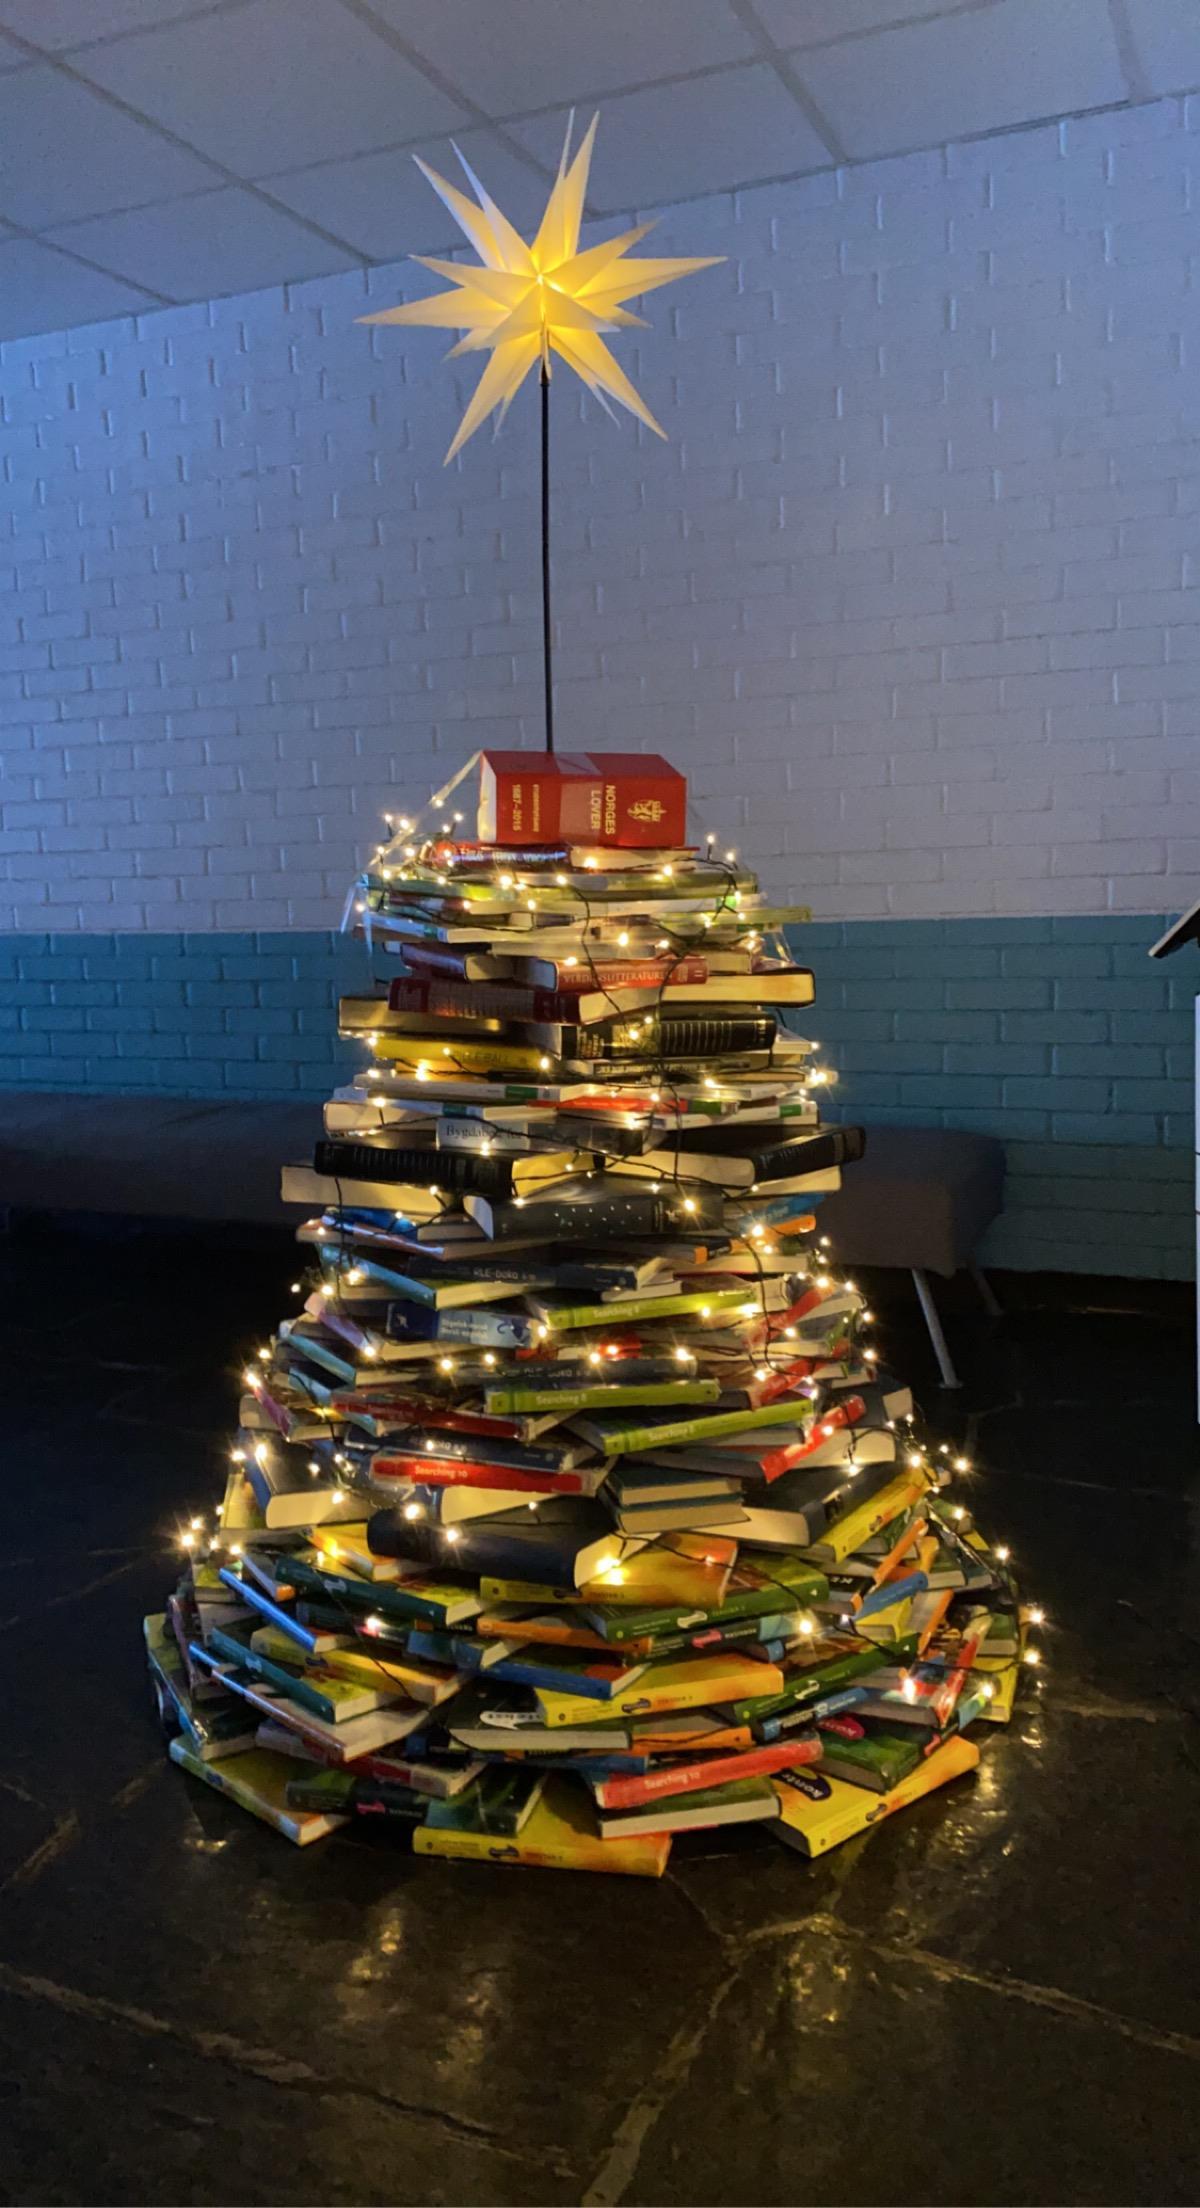 Eit juletre laga av bøker med stjerne og juletreljos. - Klikk for stort bilde